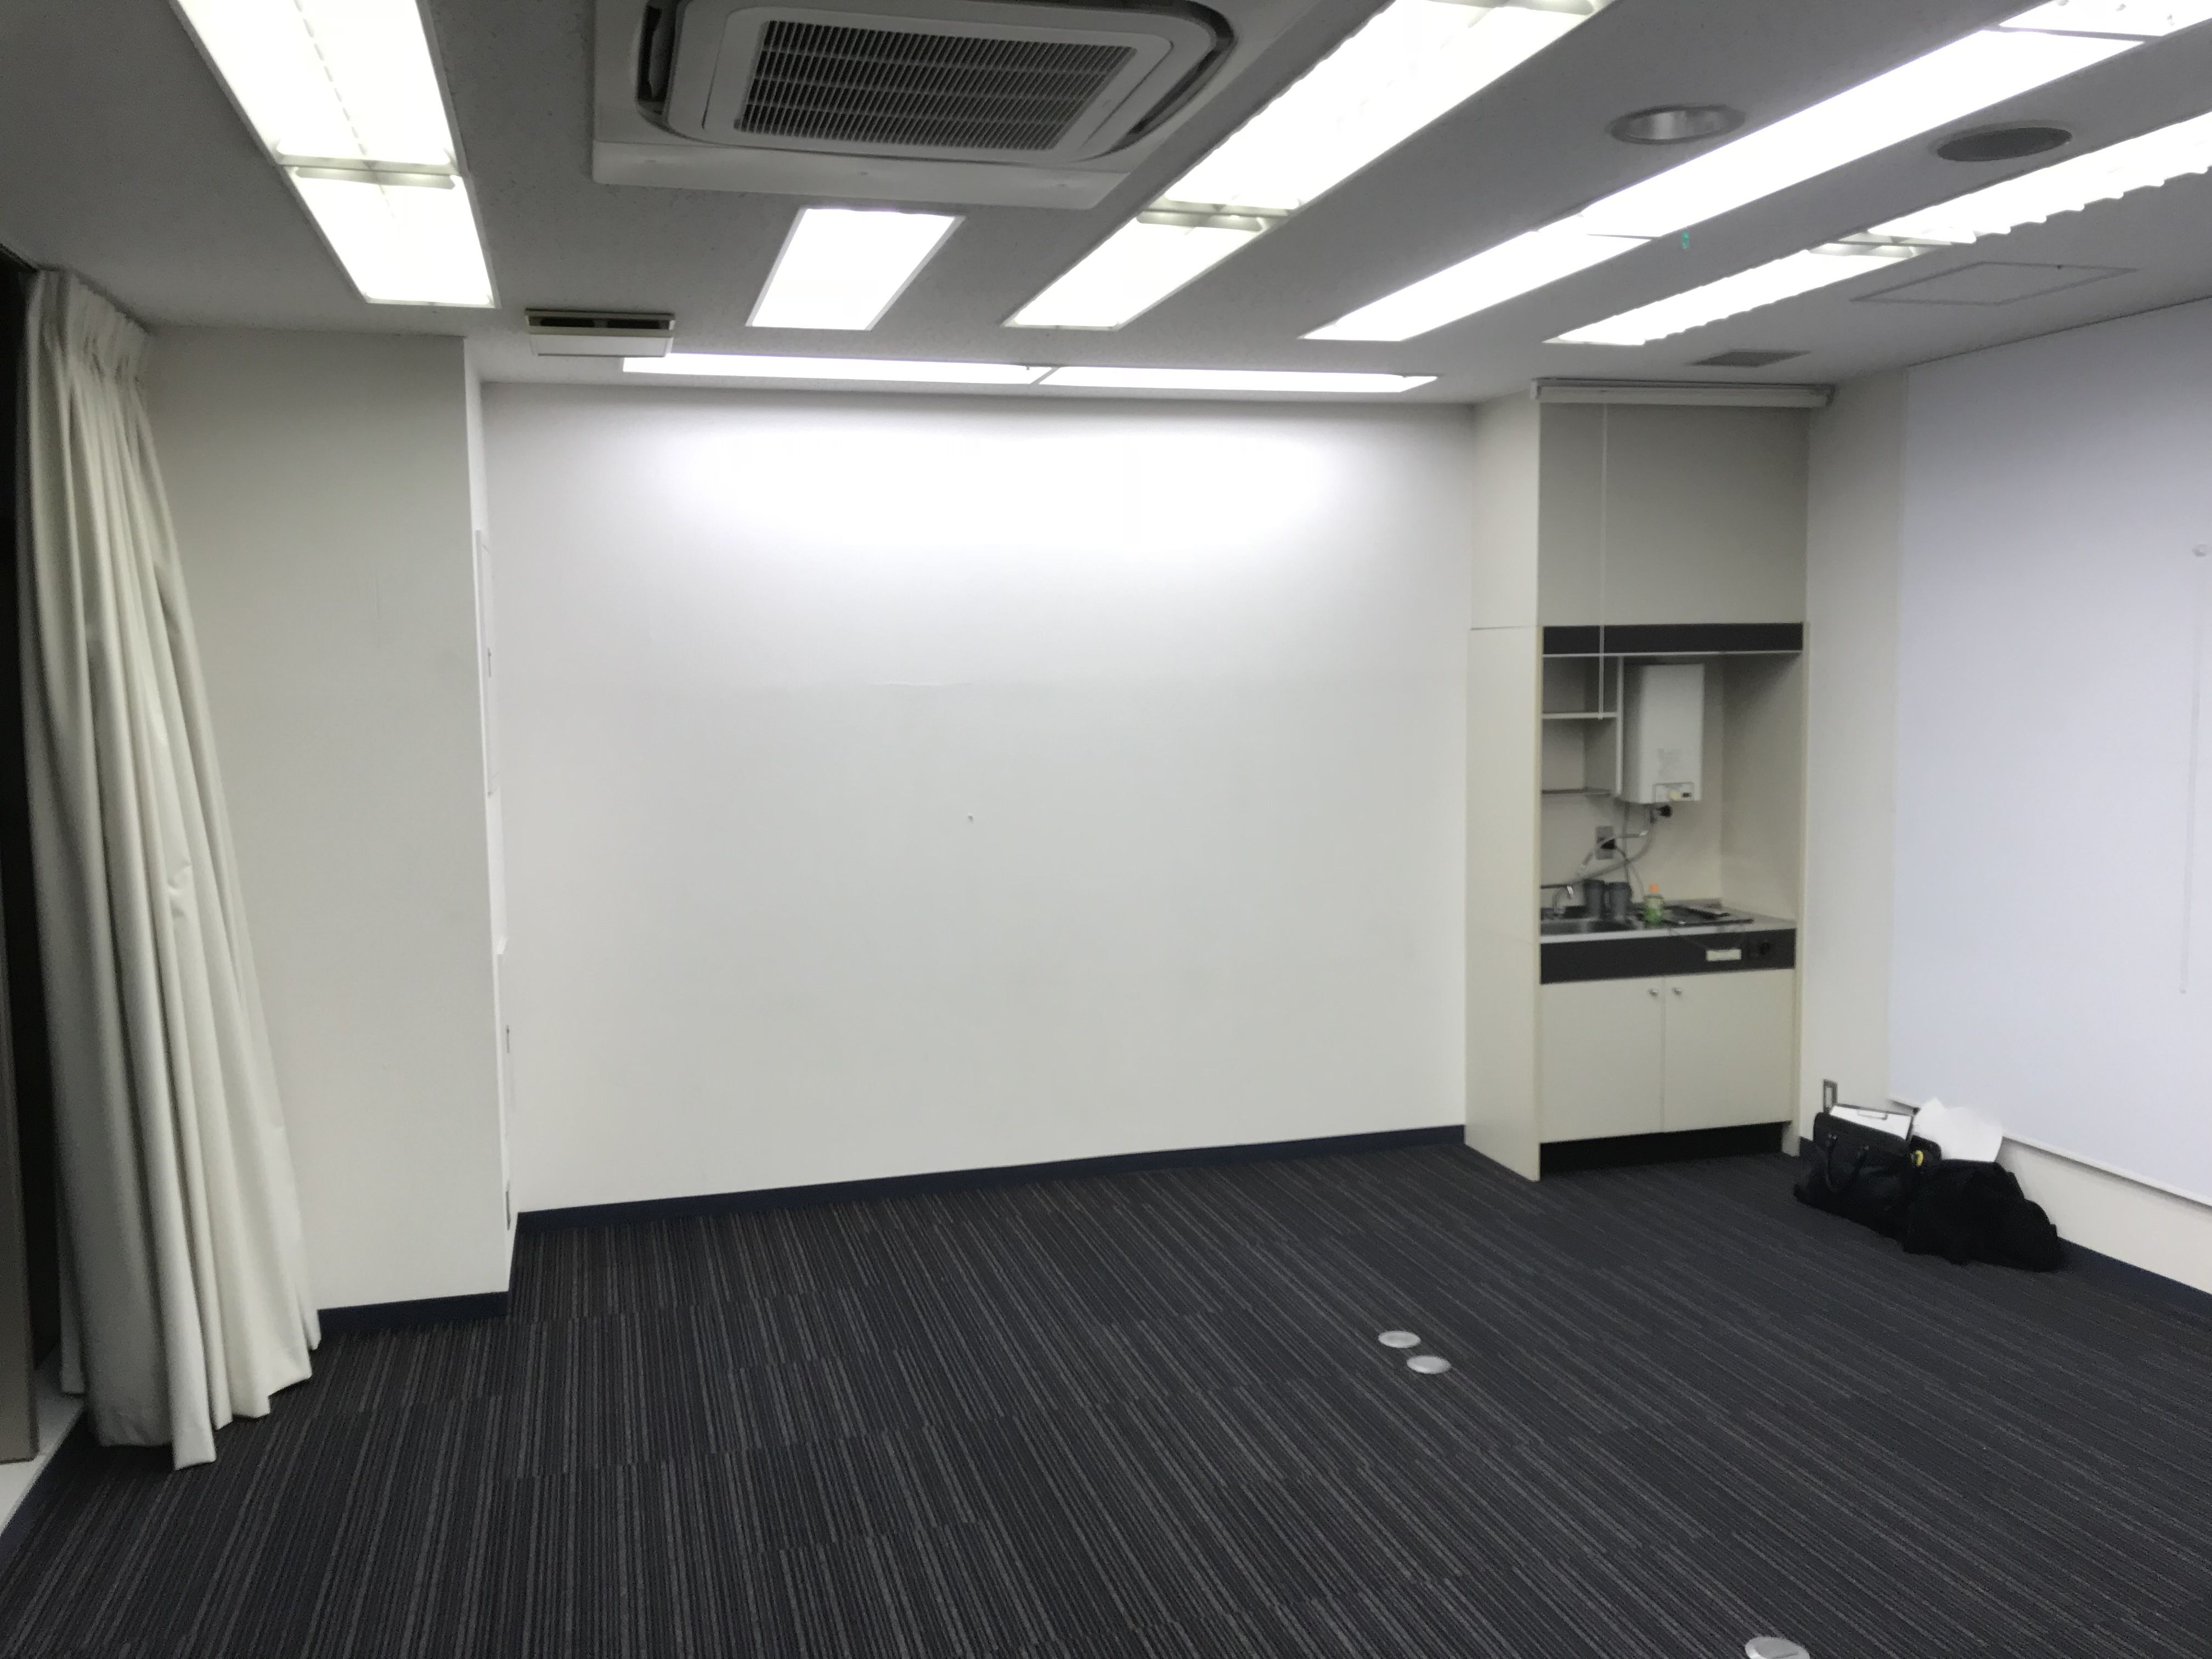 壁面いっぱいのデスクが欲しい オフィスにオーダーメイドデスク 東京 大阪 家具を楽しむ家具工房 Roots Factory ルーツファクトリー オフィシャルサイト